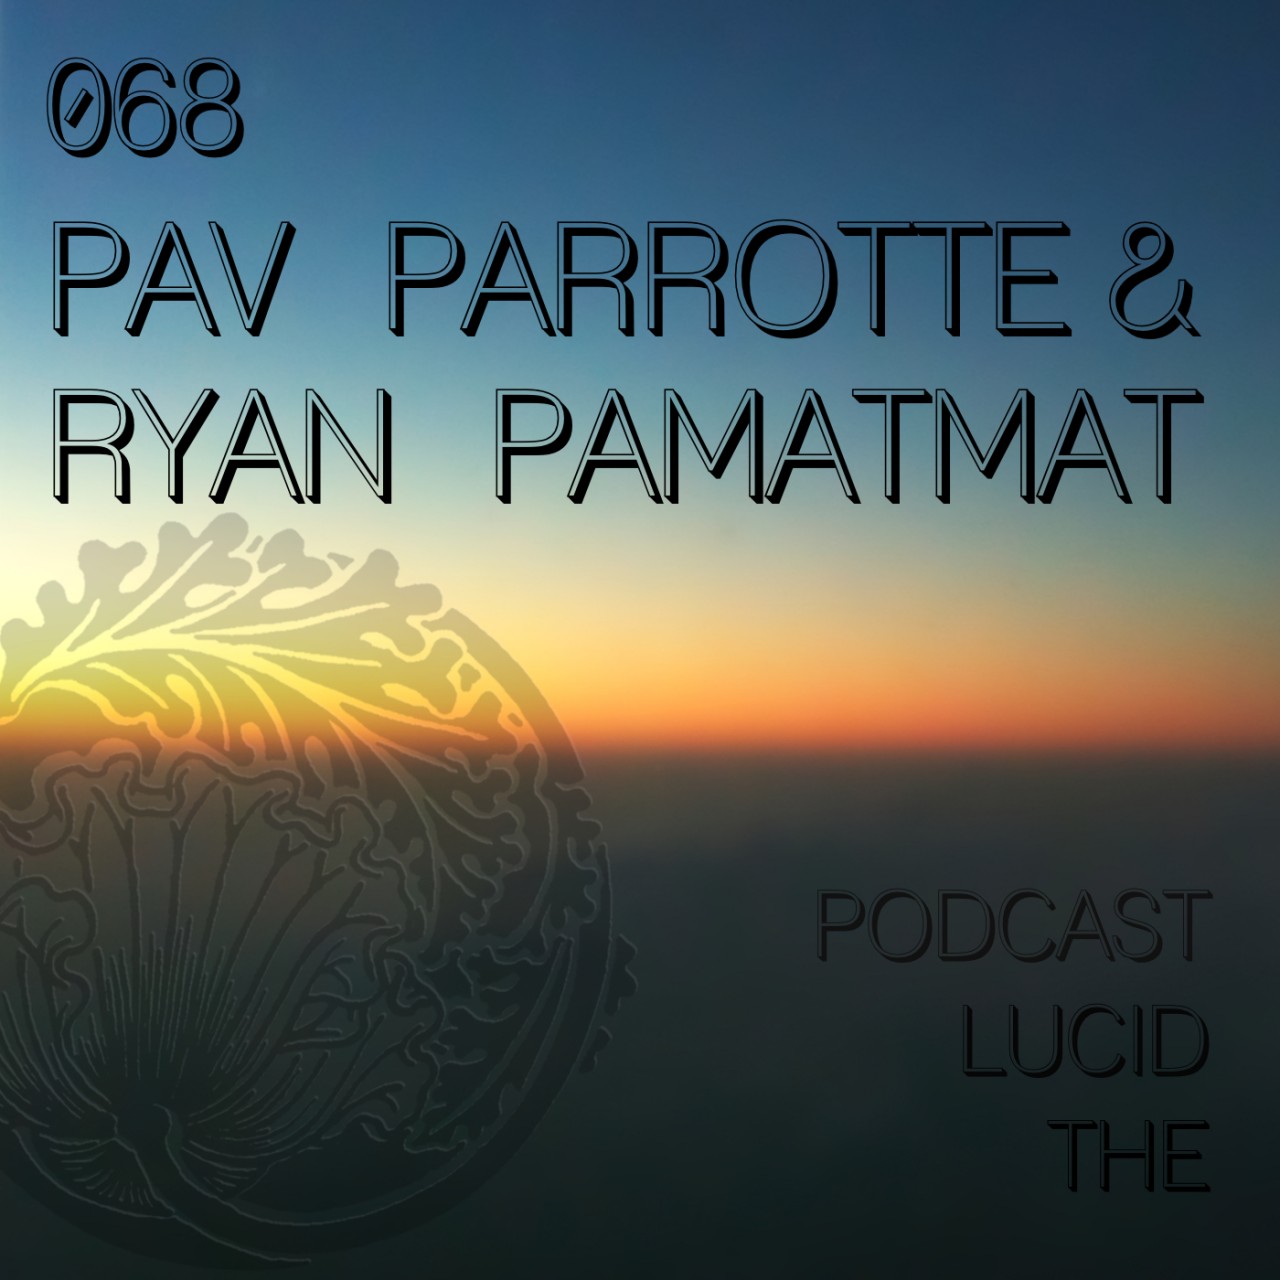 The Lucid Podcast 068 Pav Parrotte & Ryan Pamatmat